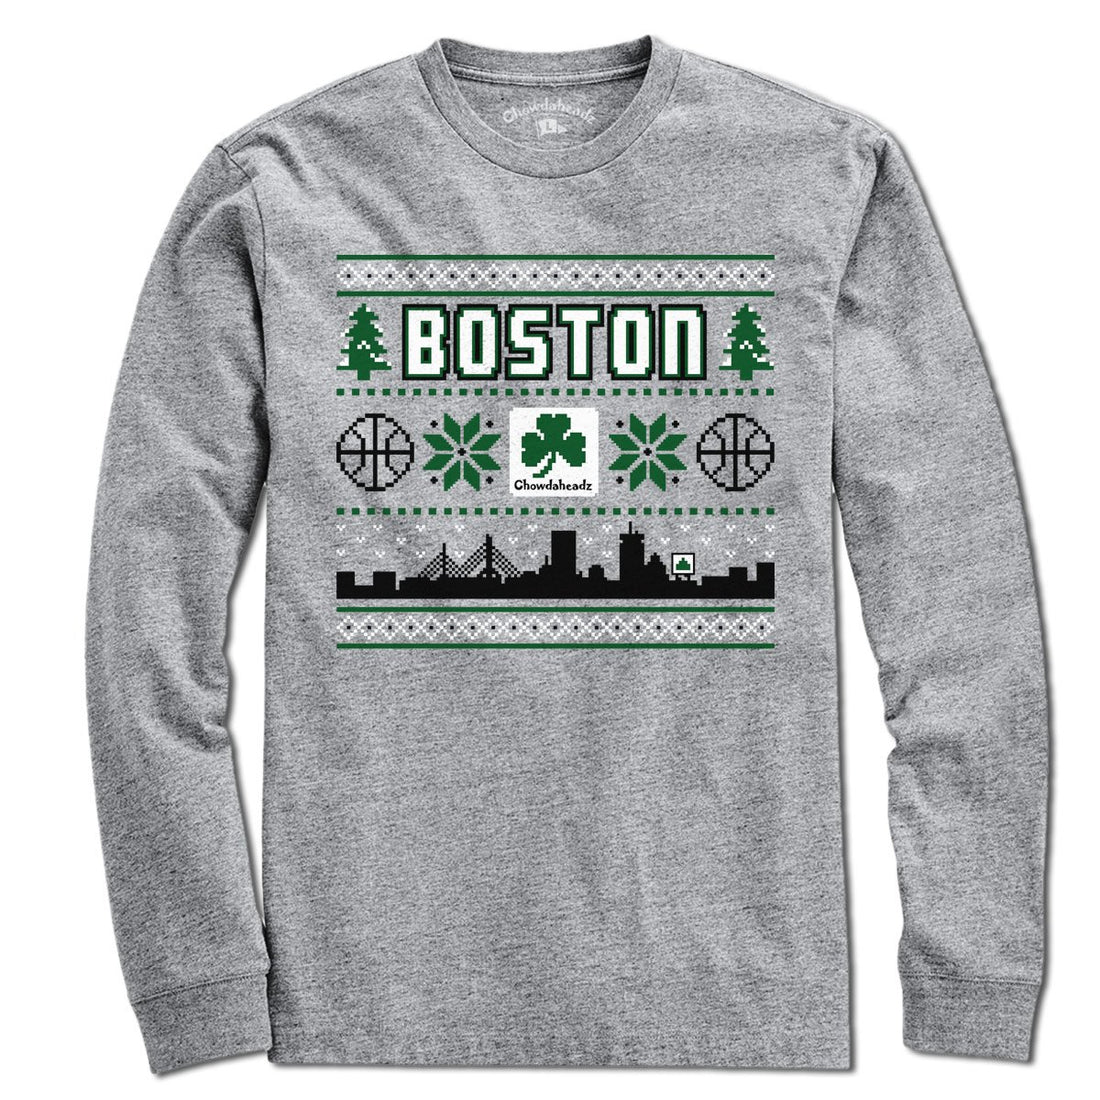 Boston Shamrock Ugly Sweater T-Shirt - Chowdaheadz